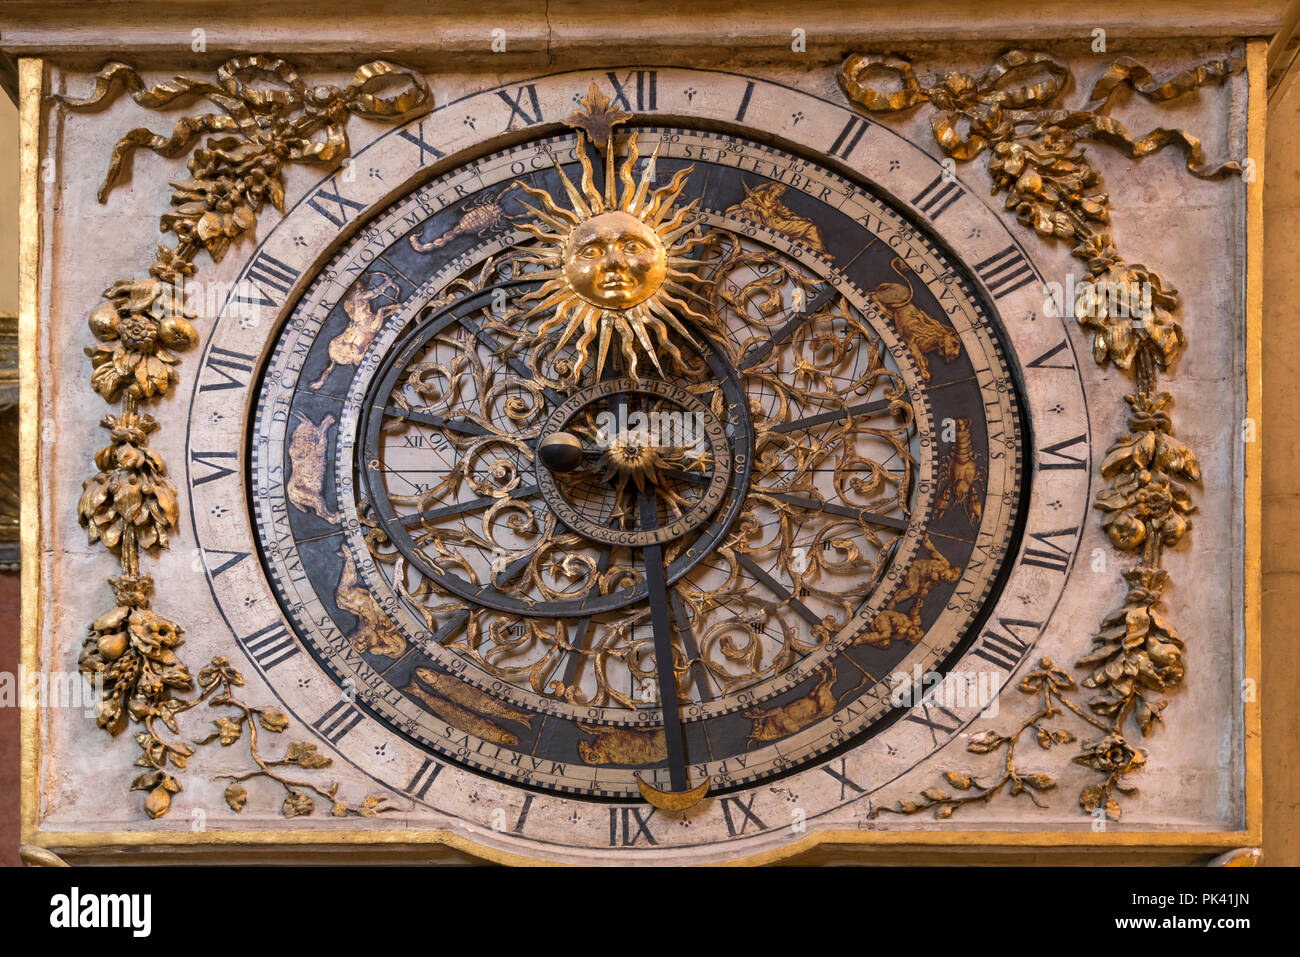 Astronomische Uhr in der Kathedrale von Lyon, Auvergne-Rhone-Alpes, Frankreich  | astronomical clock,  Lyon Cathedral, Lyon, Auvergne-Rhone-Alpes, Fra Stock Photo